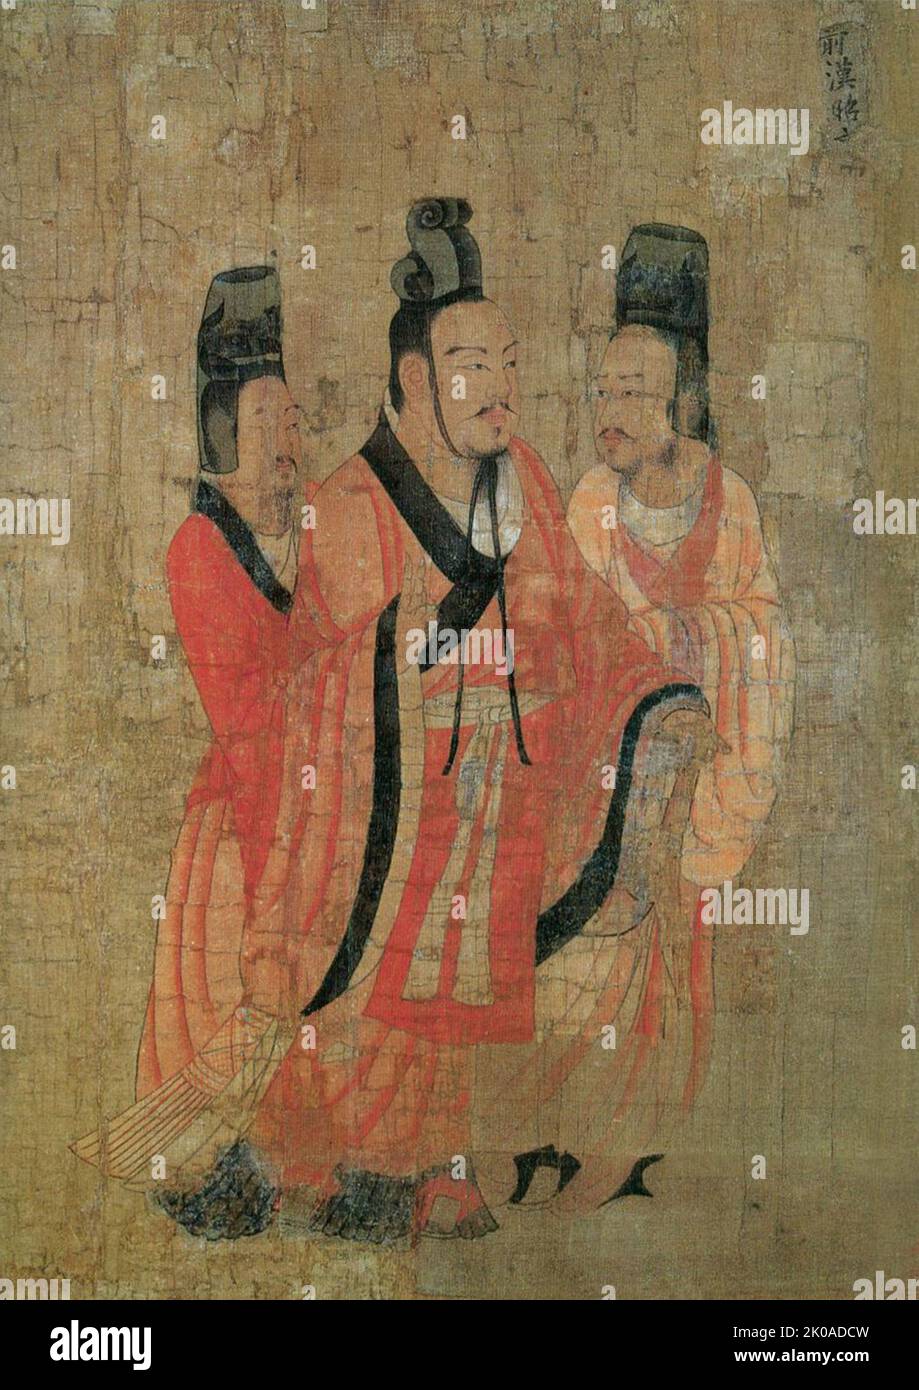 Imperatore Zhao di Han (94 AC - 74 AC) imperatore della dinastia Han occidentale dal 87 al 74 AC. L'imperatore Zhao era il figlio più giovane dell'imperatore Wu di Han. Quando nacque, l'imperatore Wu aveva già 62 anni. Il principe Fuling salì al trono dopo la morte dell'imperatore Wu nel 87 a.C. Aveva solo otto anni. Huo Guang servì da reggente Foto Stock